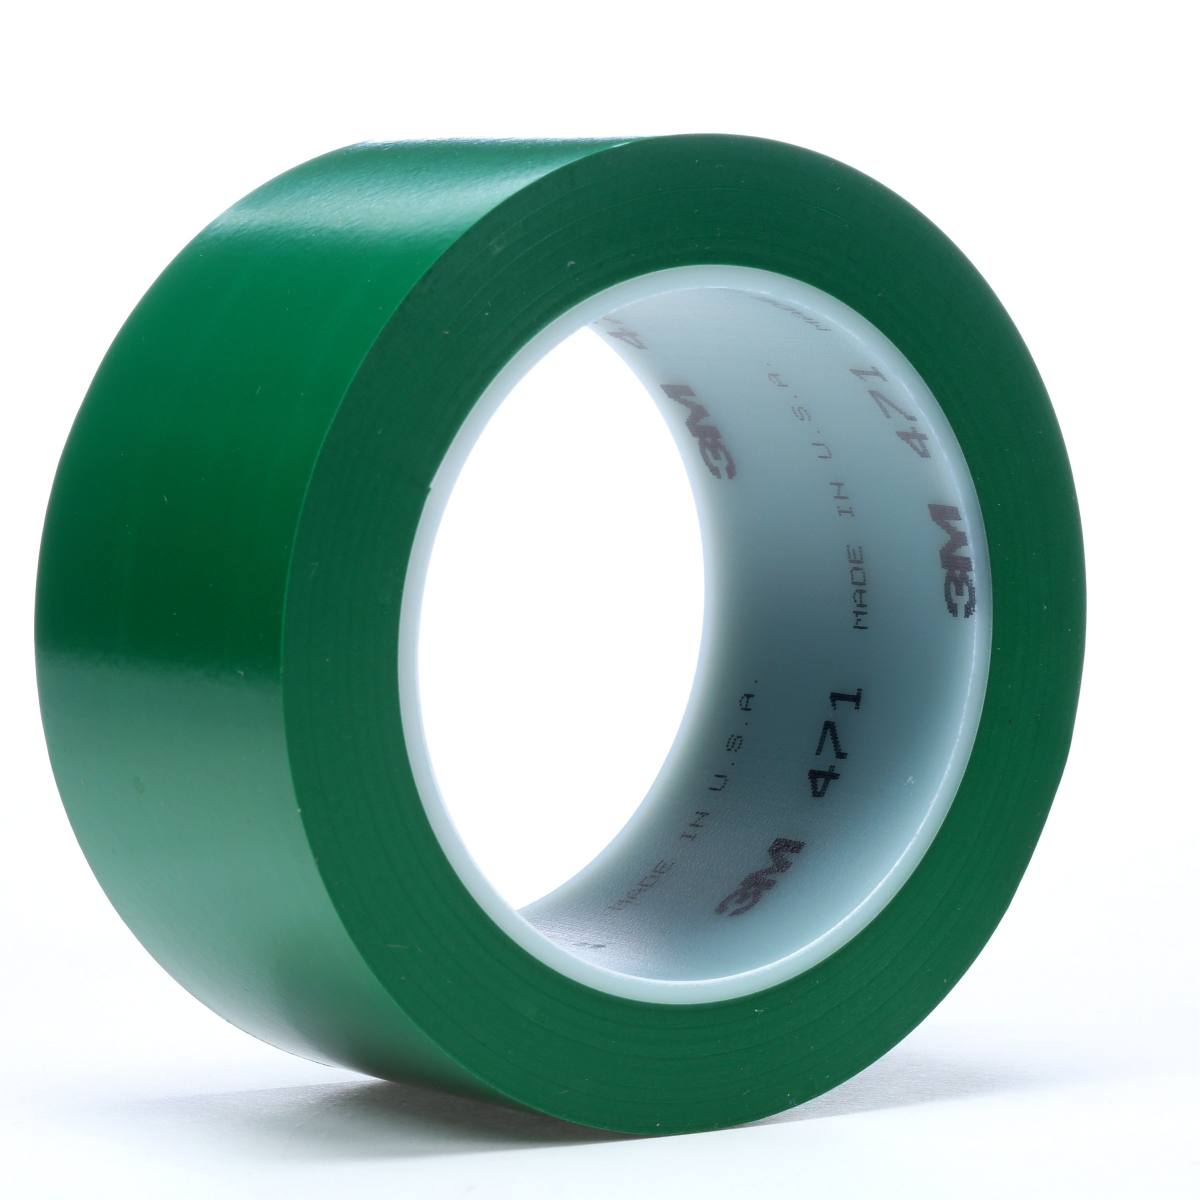 Nastro adesivo 3M in PVC morbido 471 F, verde, 25 mm x 33 m, 0,13 mm